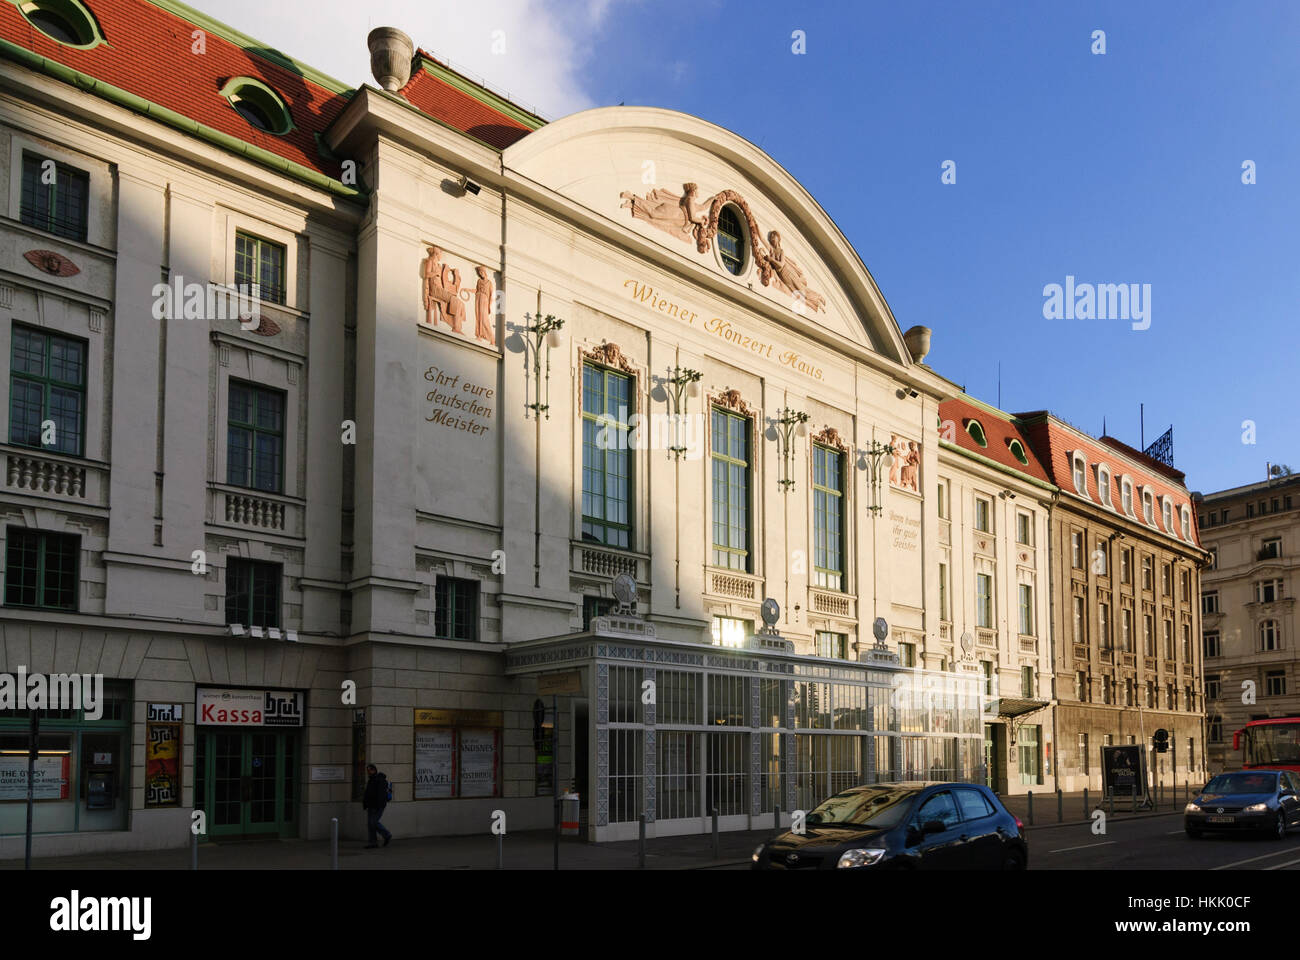 Wien, Vienna: Wiener Konzerthaus (concert hall), 03., Wien, Austria Stock Photo